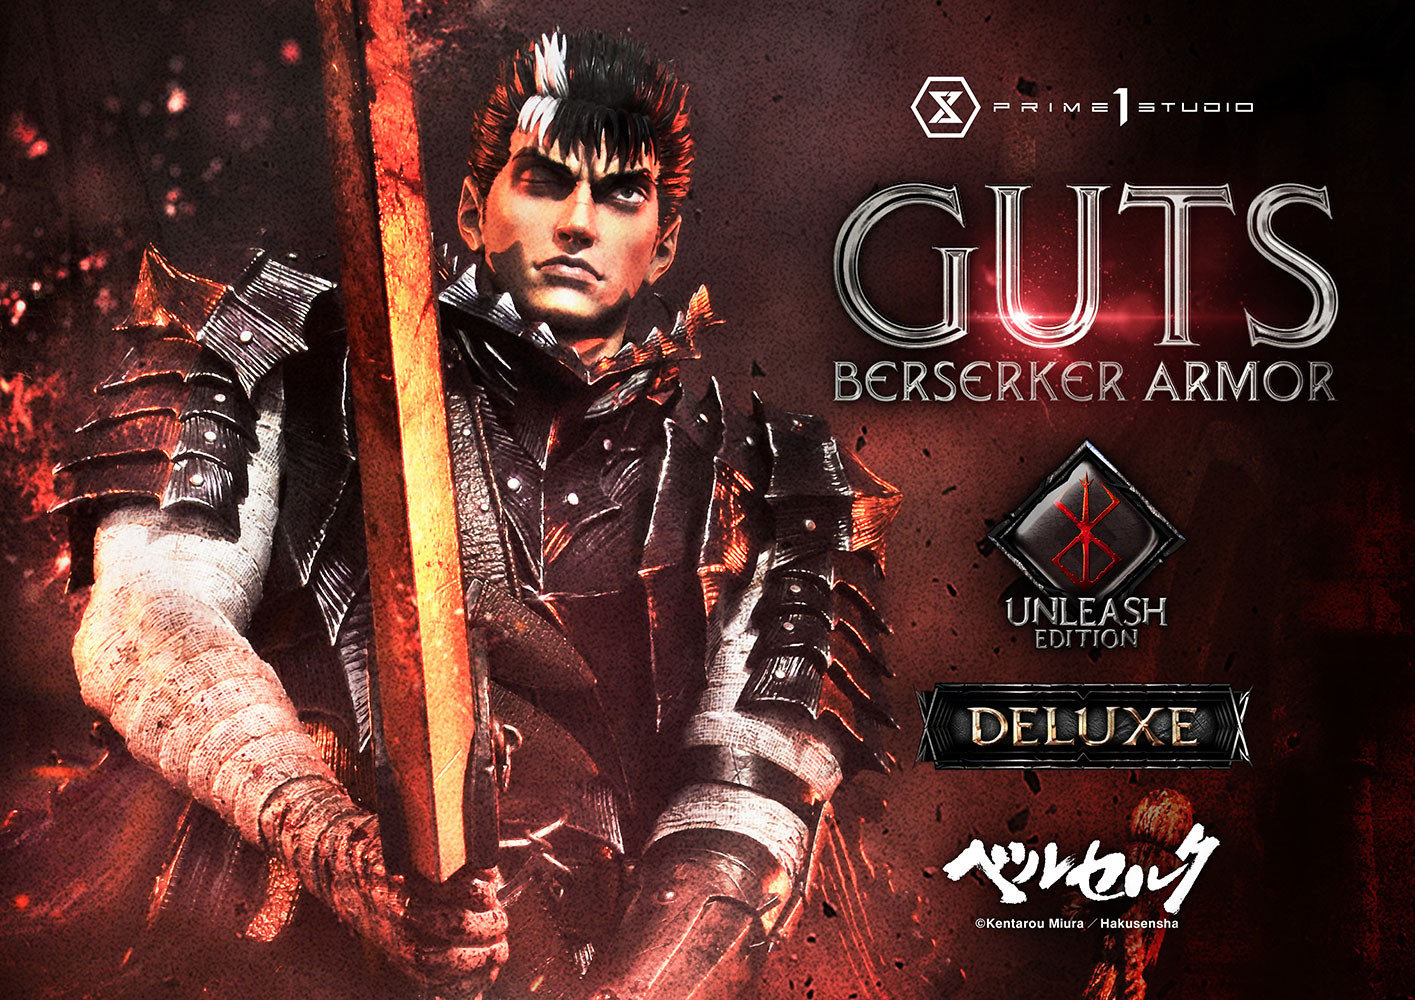 Guts Berserker Armor (Unleash Edition) Deluxe Version (Prototype Shown) View 1